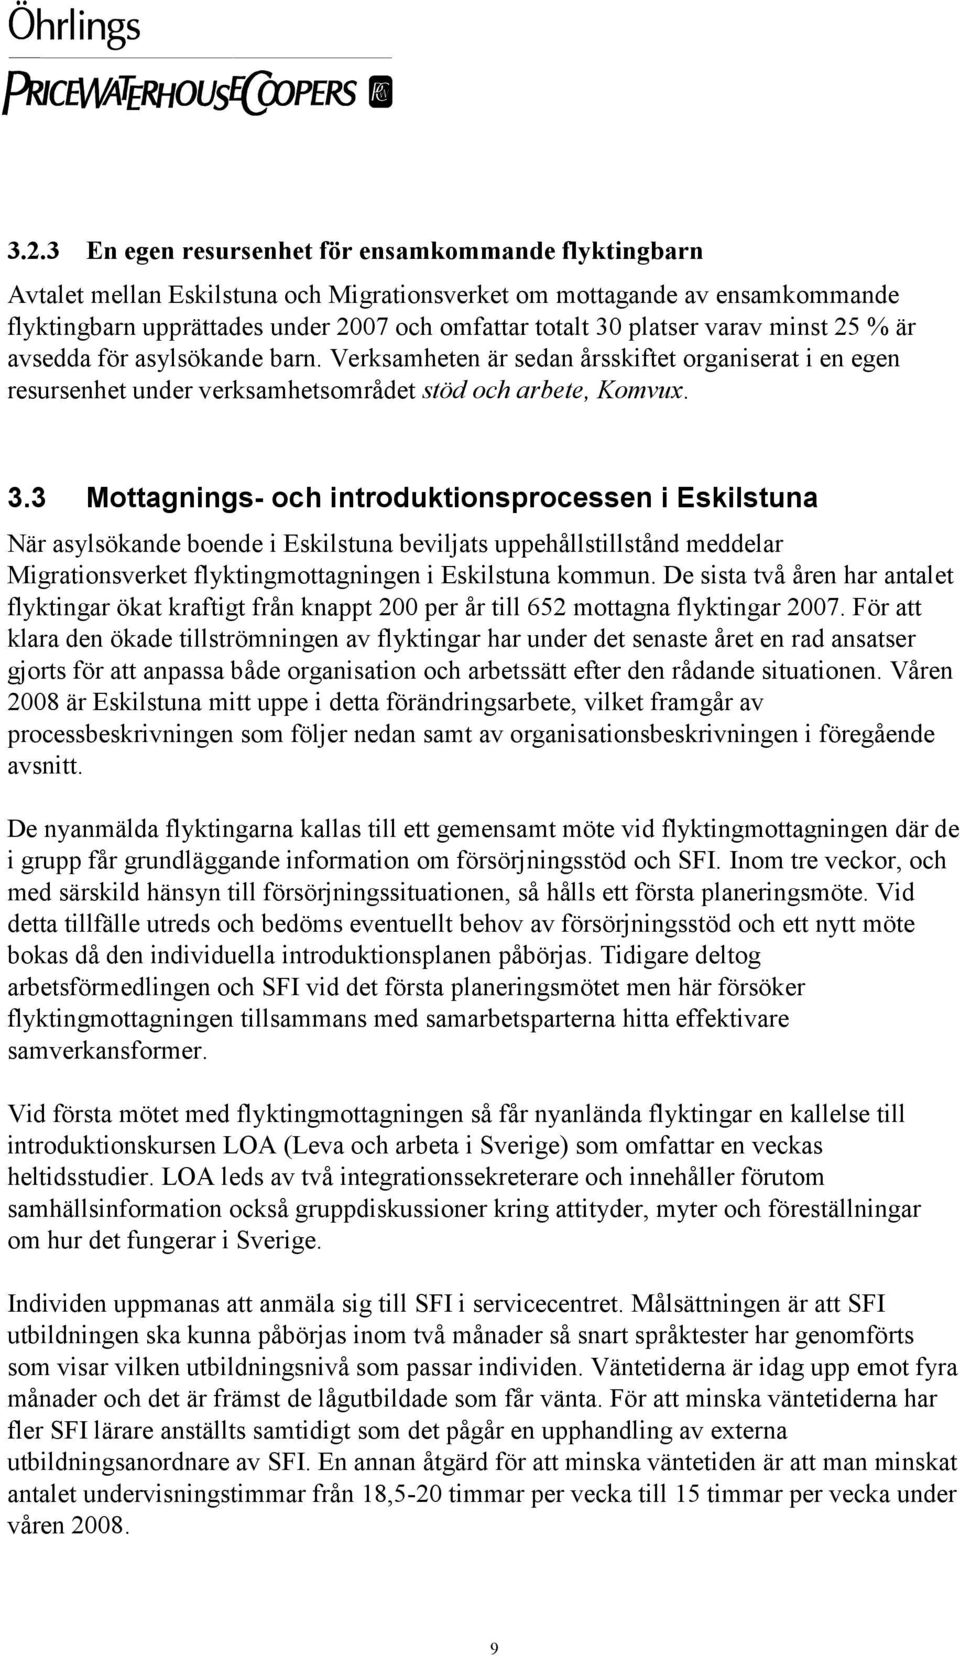 3 Mottagnings- och introduktionsprocessen i Eskilstuna När asylsökande boende i Eskilstuna beviljats uppehållstillstånd meddelar Migrationsverket flyktingmottagningen i Eskilstuna kommun.